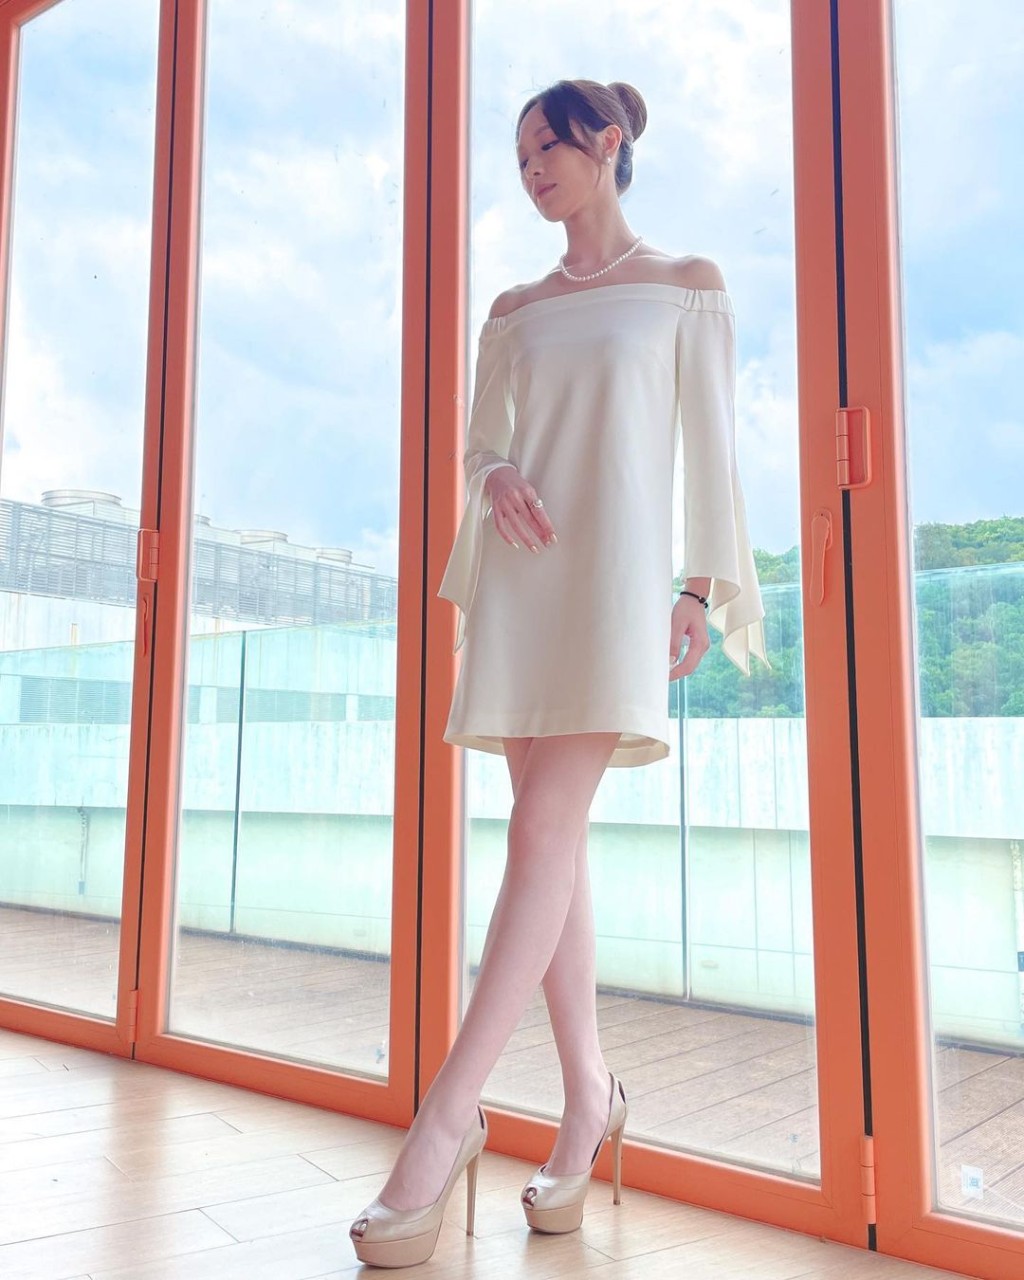 冯盈盈近期爱穿白色裙。